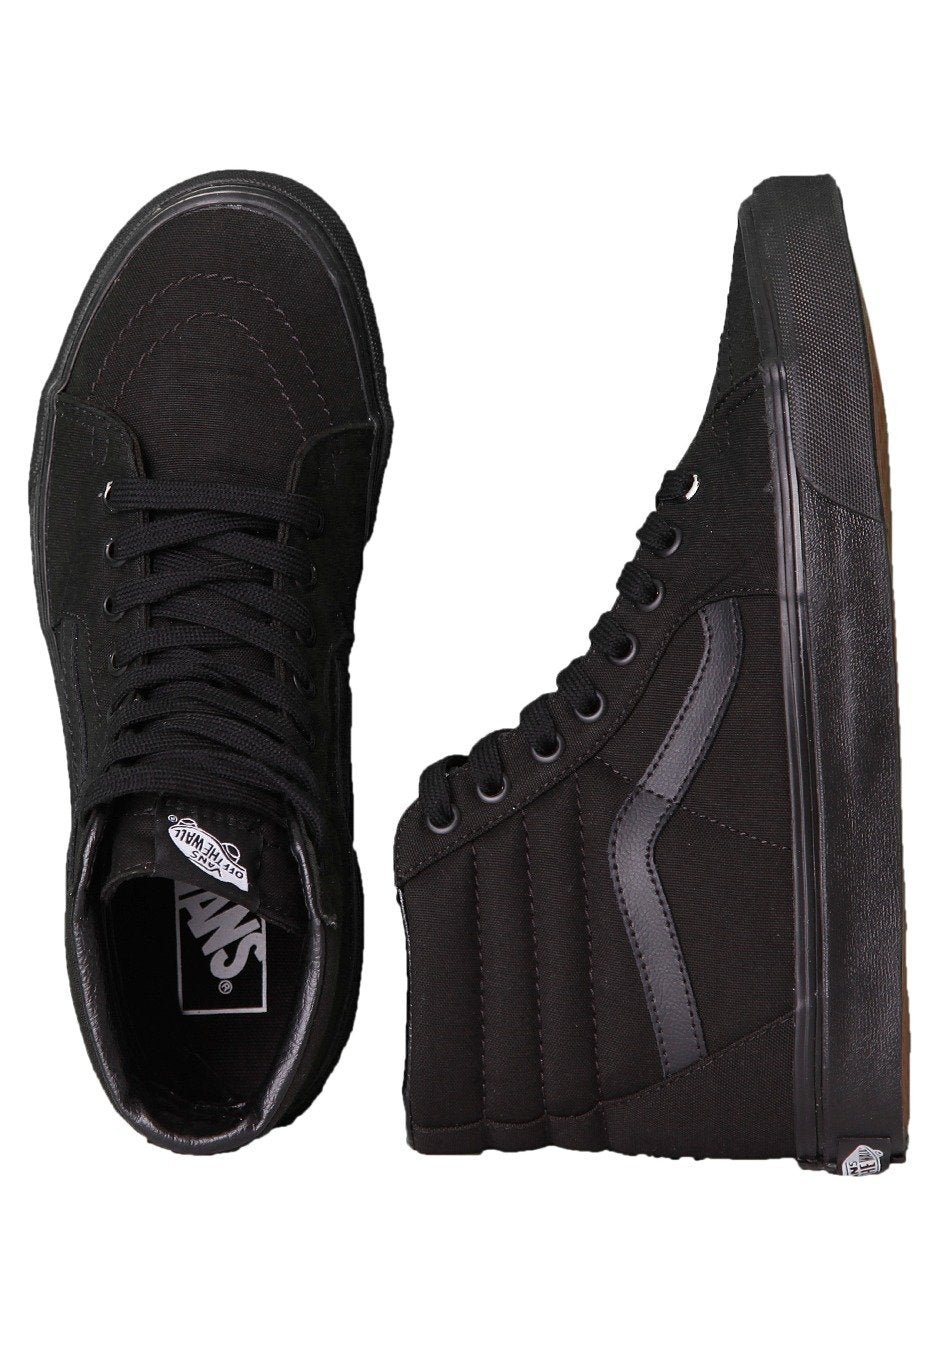 Vans - Sk8-Hi Black/Black/Black - Shoes